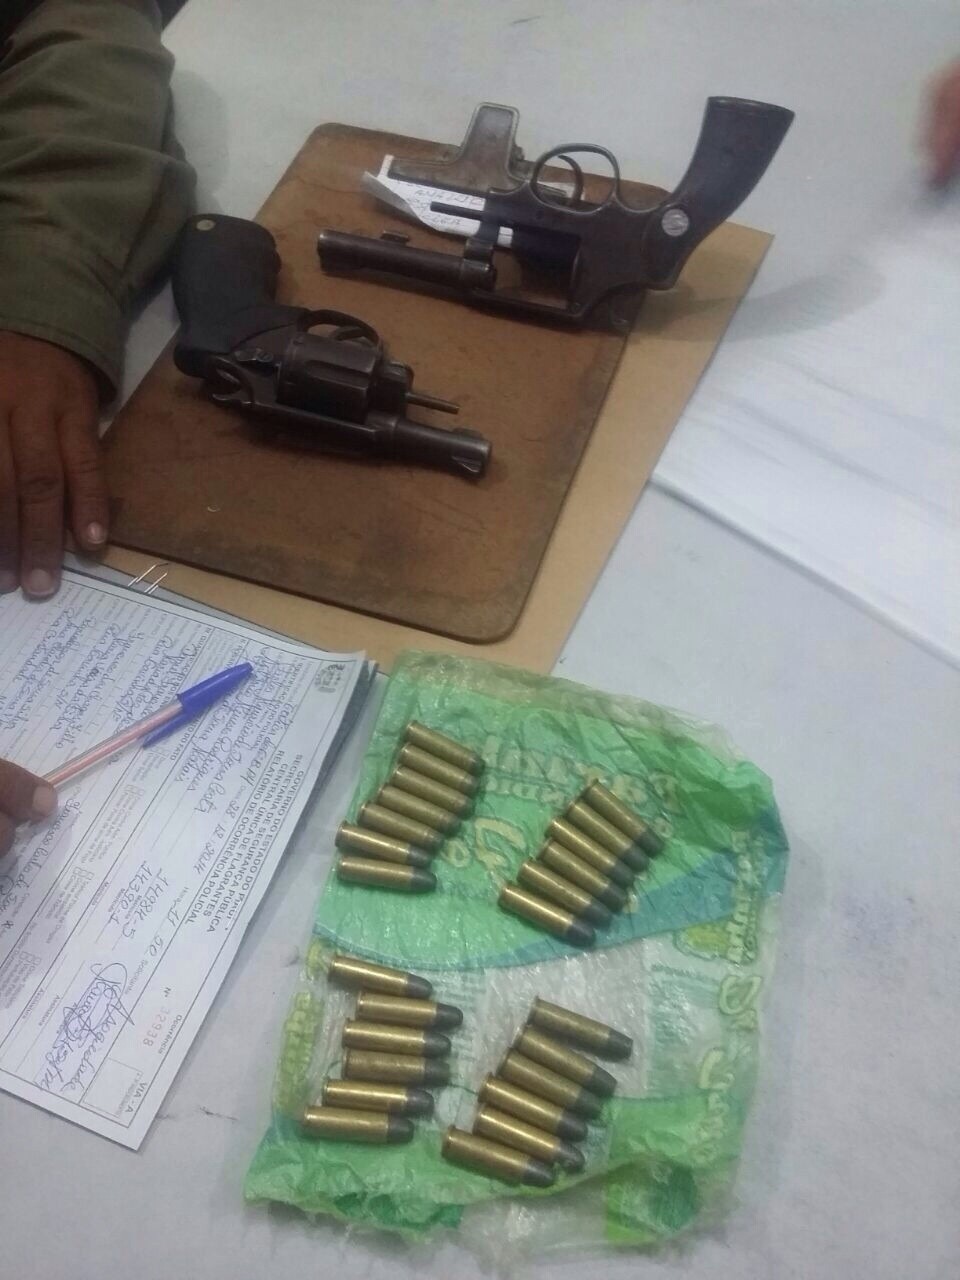 Armas e munições que foram encontradas com os suspeitos (Foto: Polícia Militar/Divulgação)